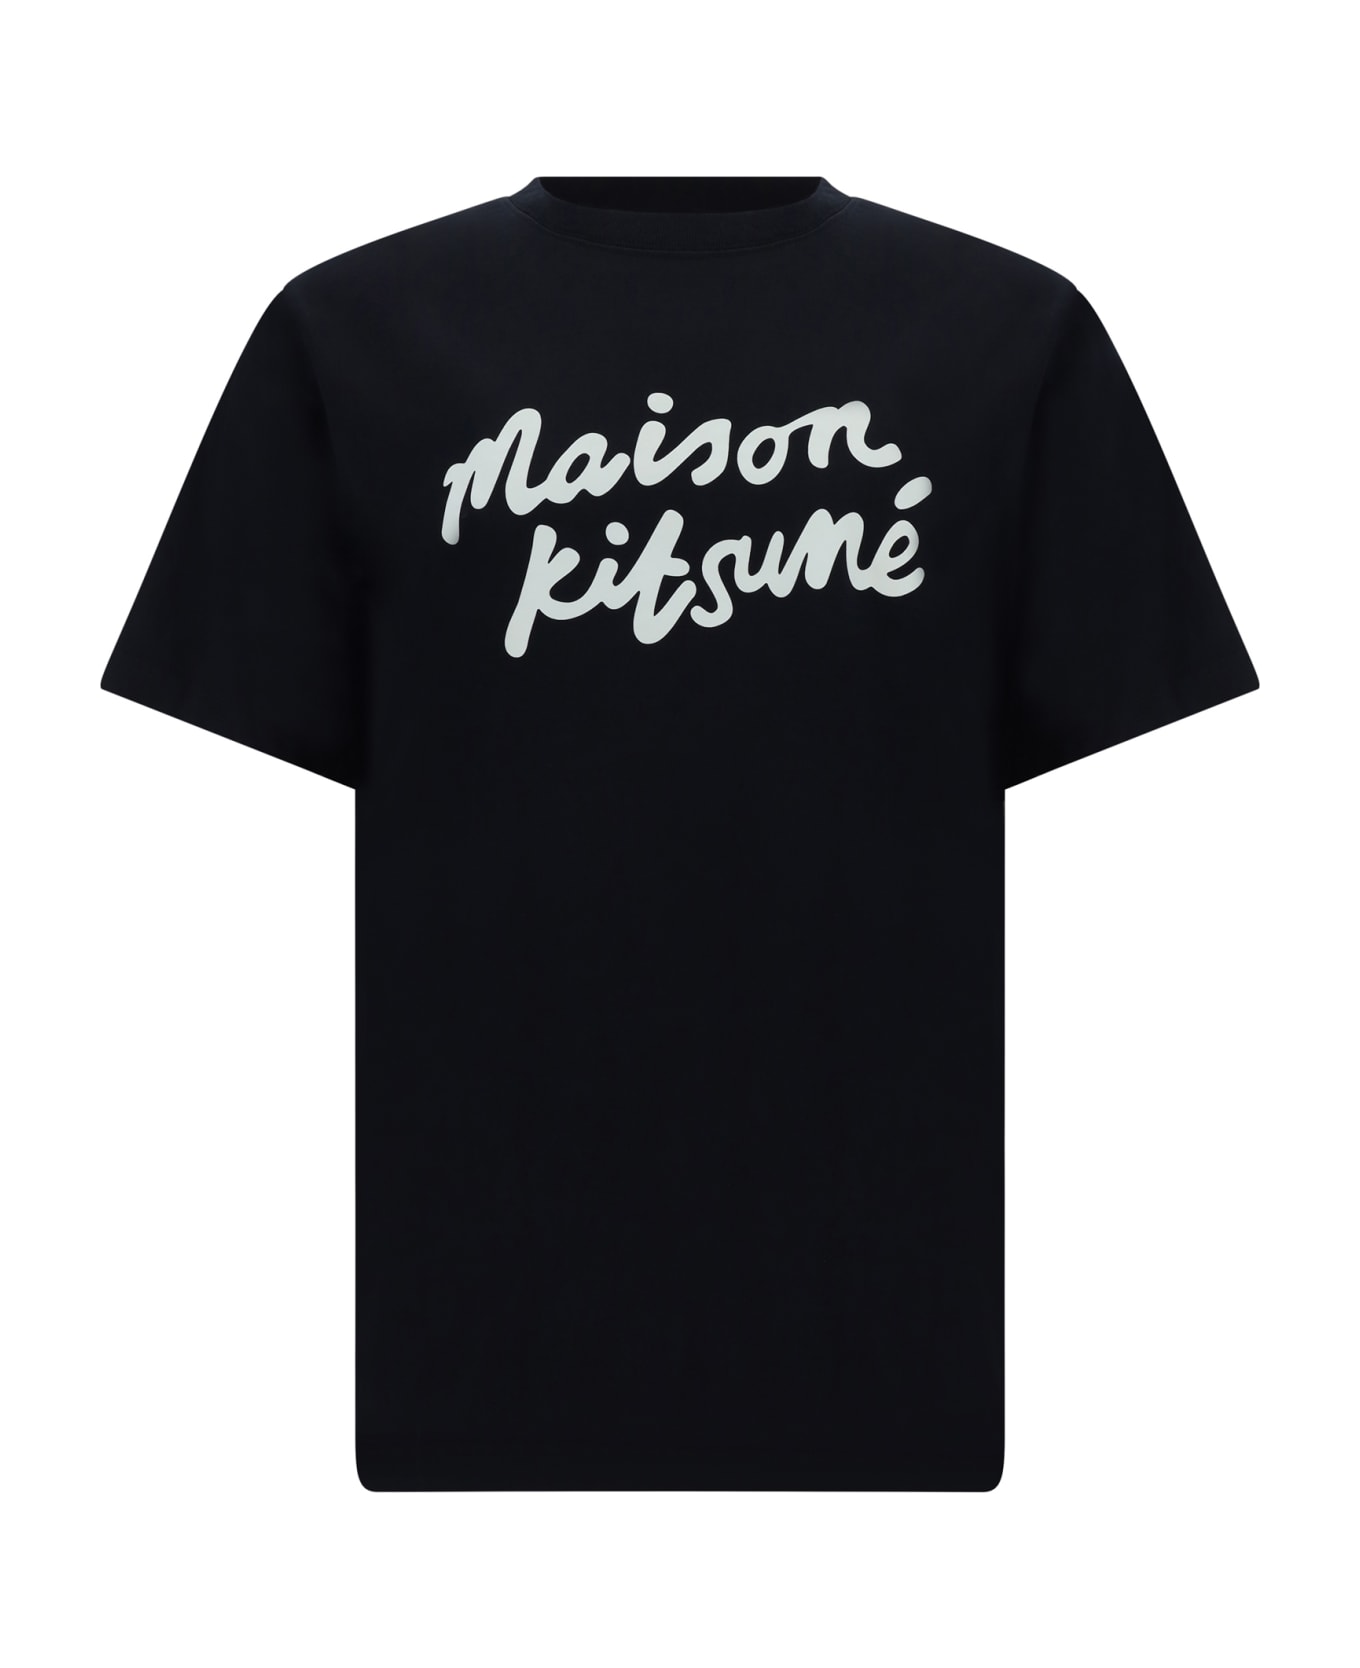 Maison Kitsuné T-shirt - Black/white